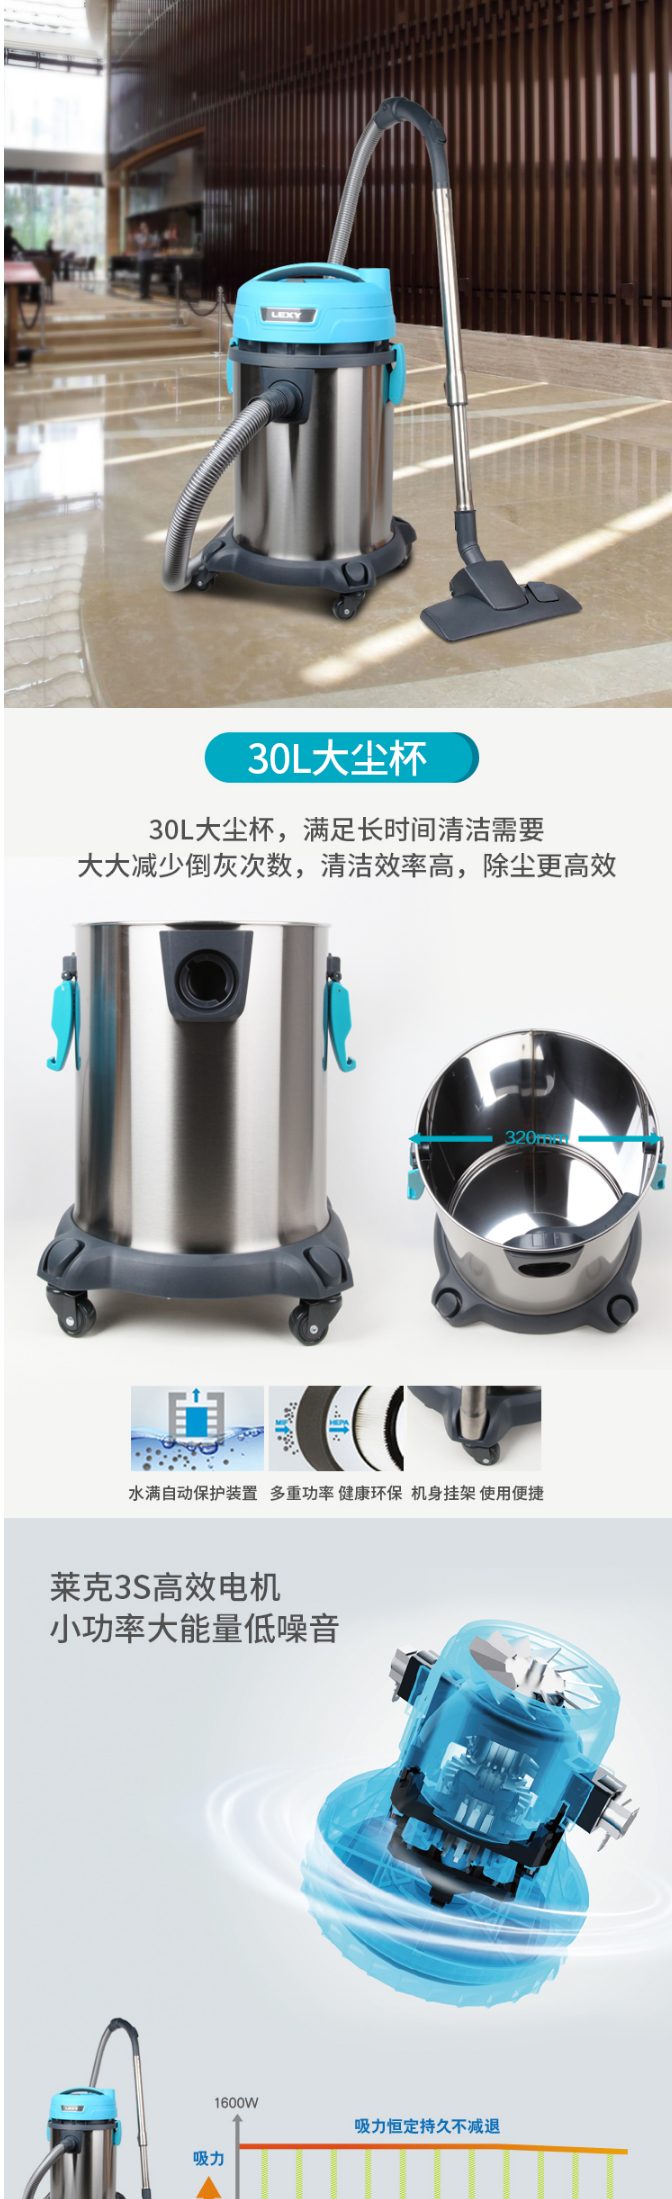 【莱克VC-CW3002】莱克吸尘器VC-CW3002-商用桶式干湿两用吸尘器【行情-报价-价格-评_02.png